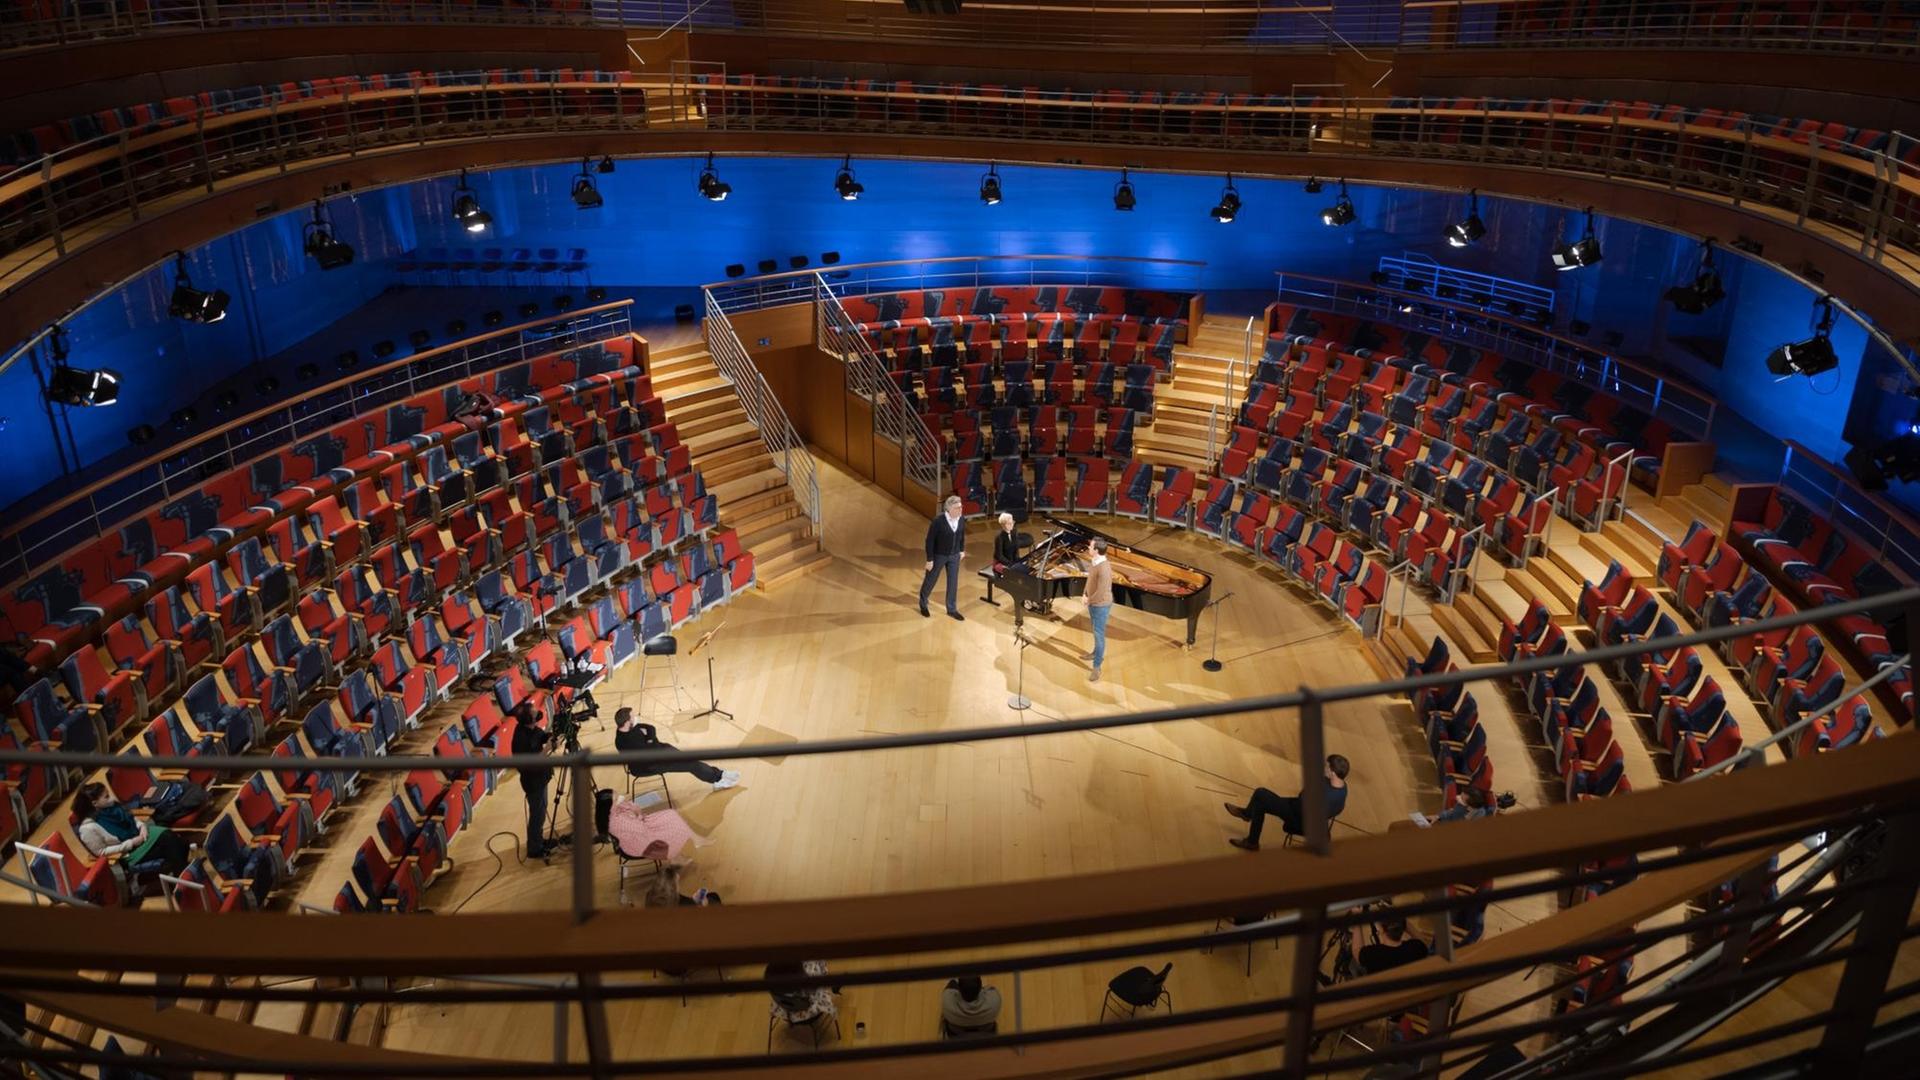 Saalansicht eines geschwungenen Konzertraumes mit roten Sesseln, die ovalförmig um die Bühne angeordnet sind. Auf dem Parkett steht ein Flügel, mehrere Menschen und zwei Kameras.